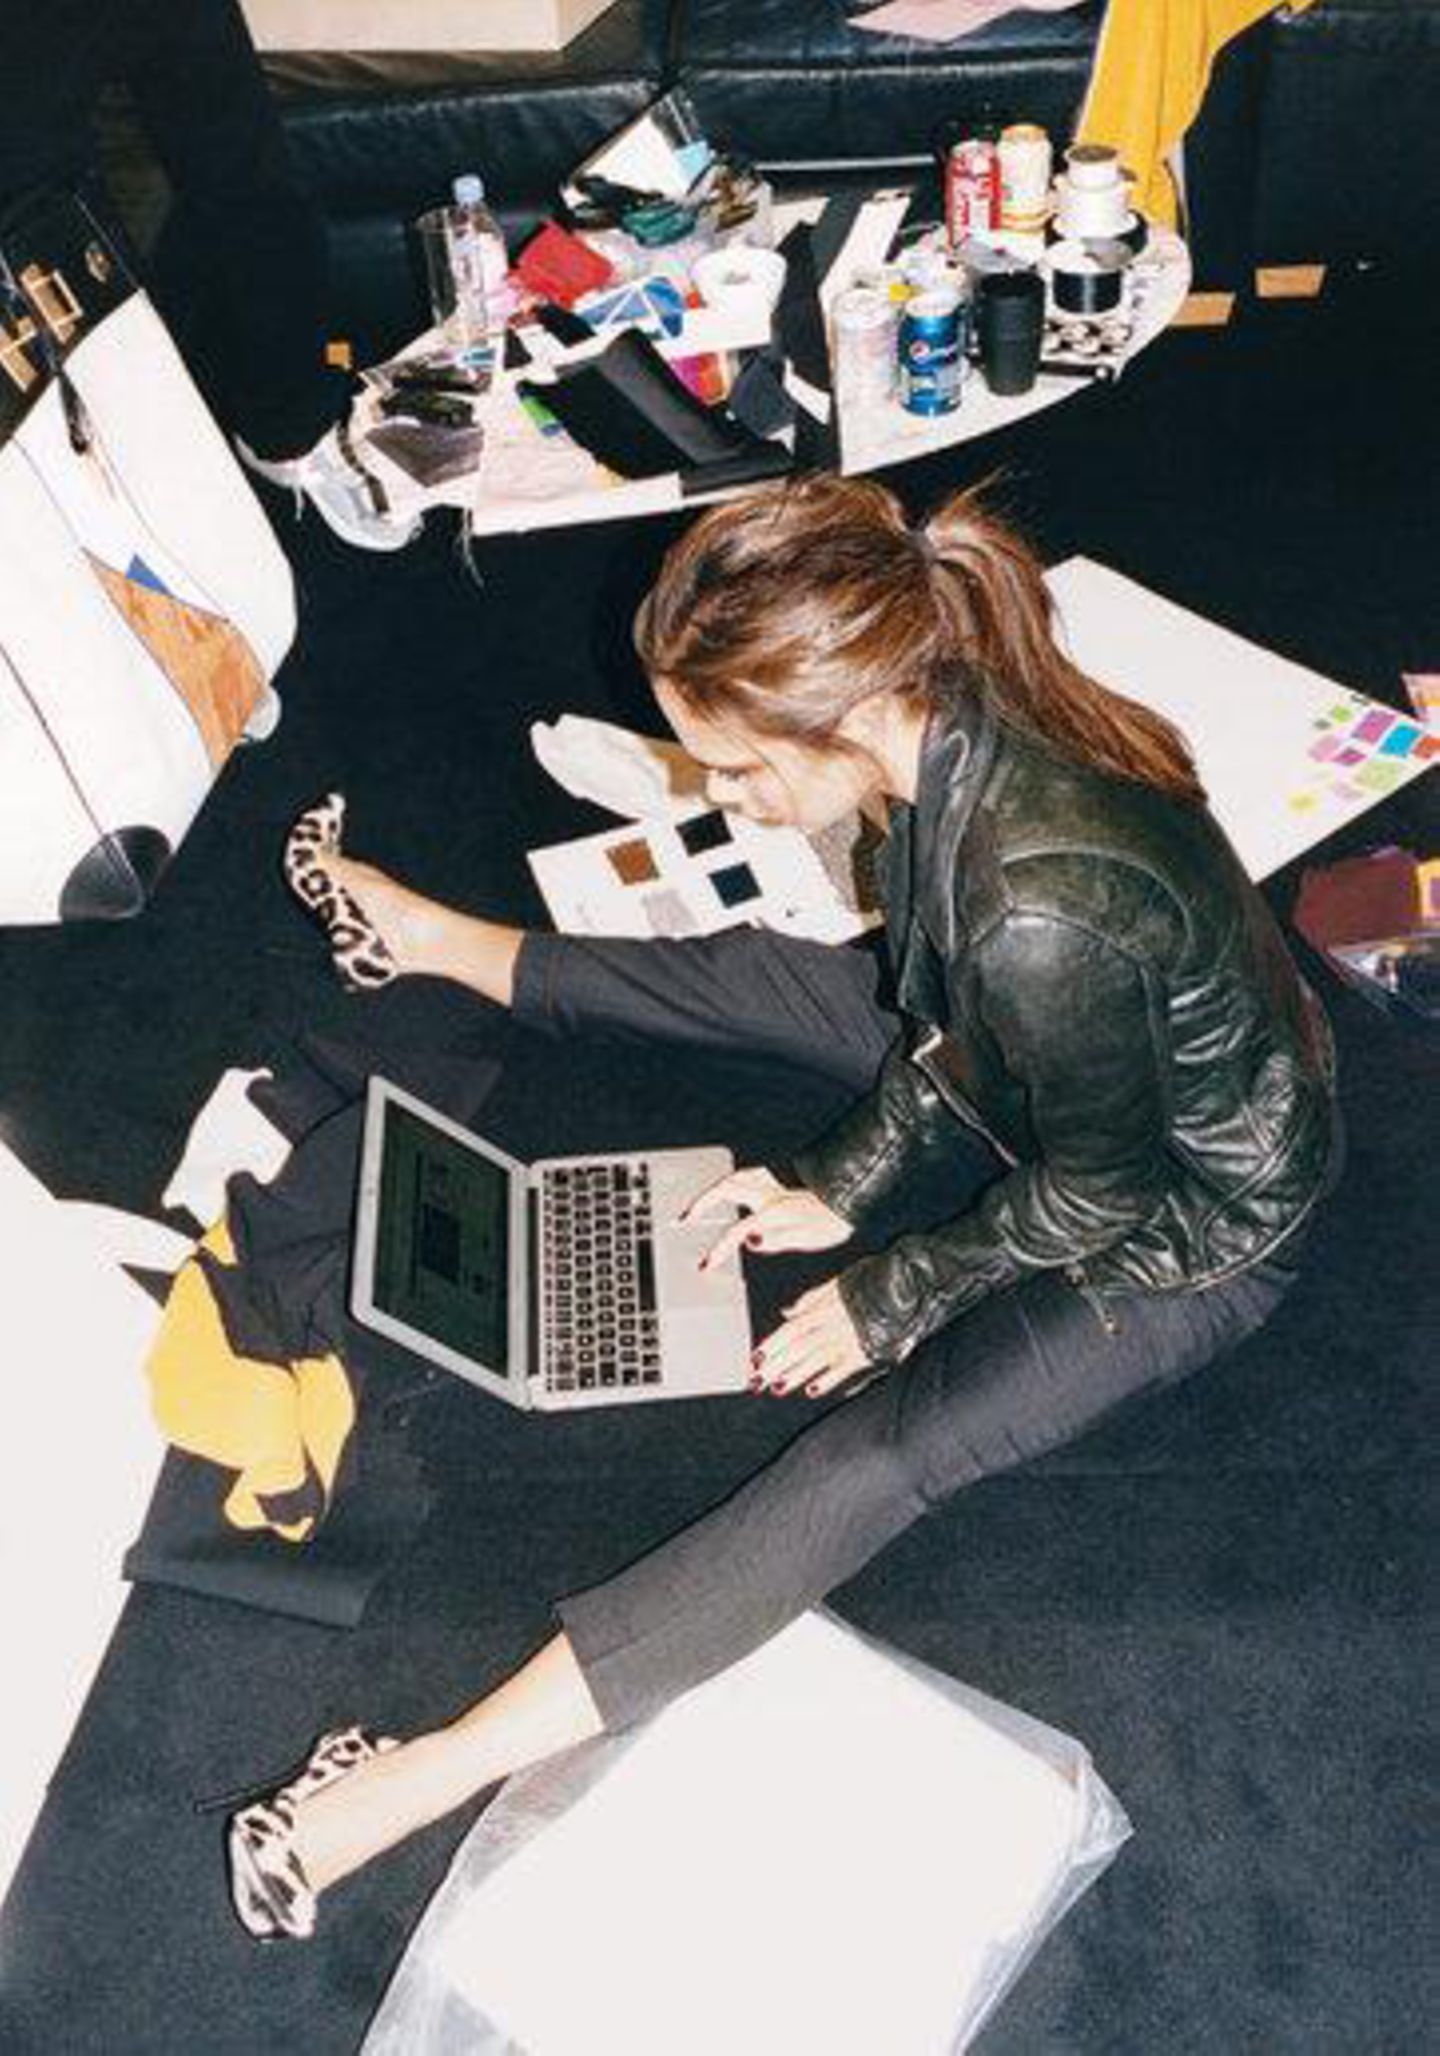 22. August 2013: Auf ihrem Twitter-Profil gewährt uns Victoria Beckham Einblick in ihren Arbeitsalltag. Entstanden ist das Foto für eine Story im "T Magazine" über Beckhams Arbeit als Modedesignerin.